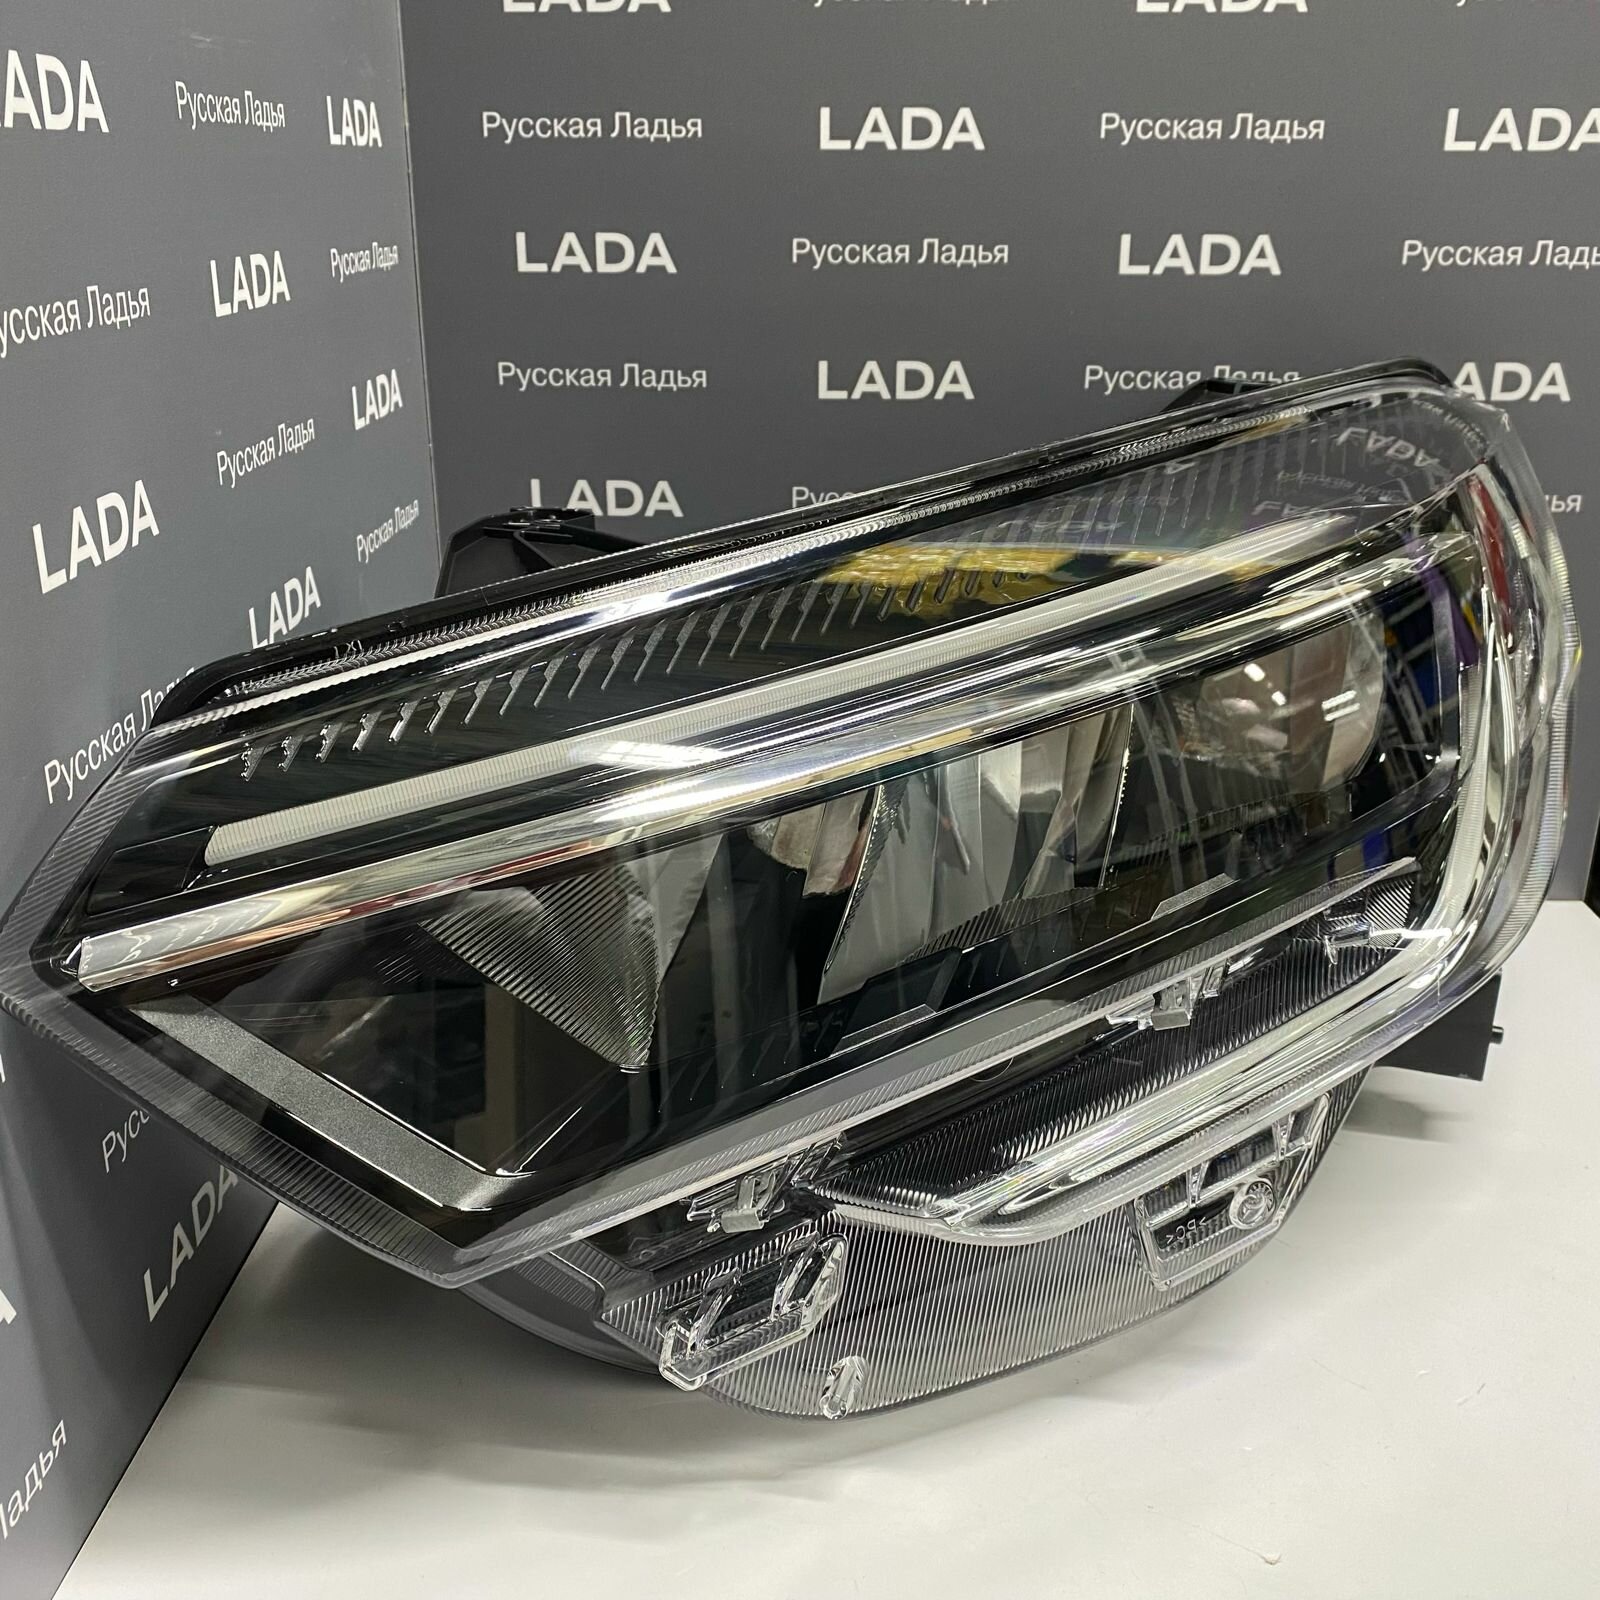 Блок-фара передняя левая для Lada Vesta NG (оригинал).